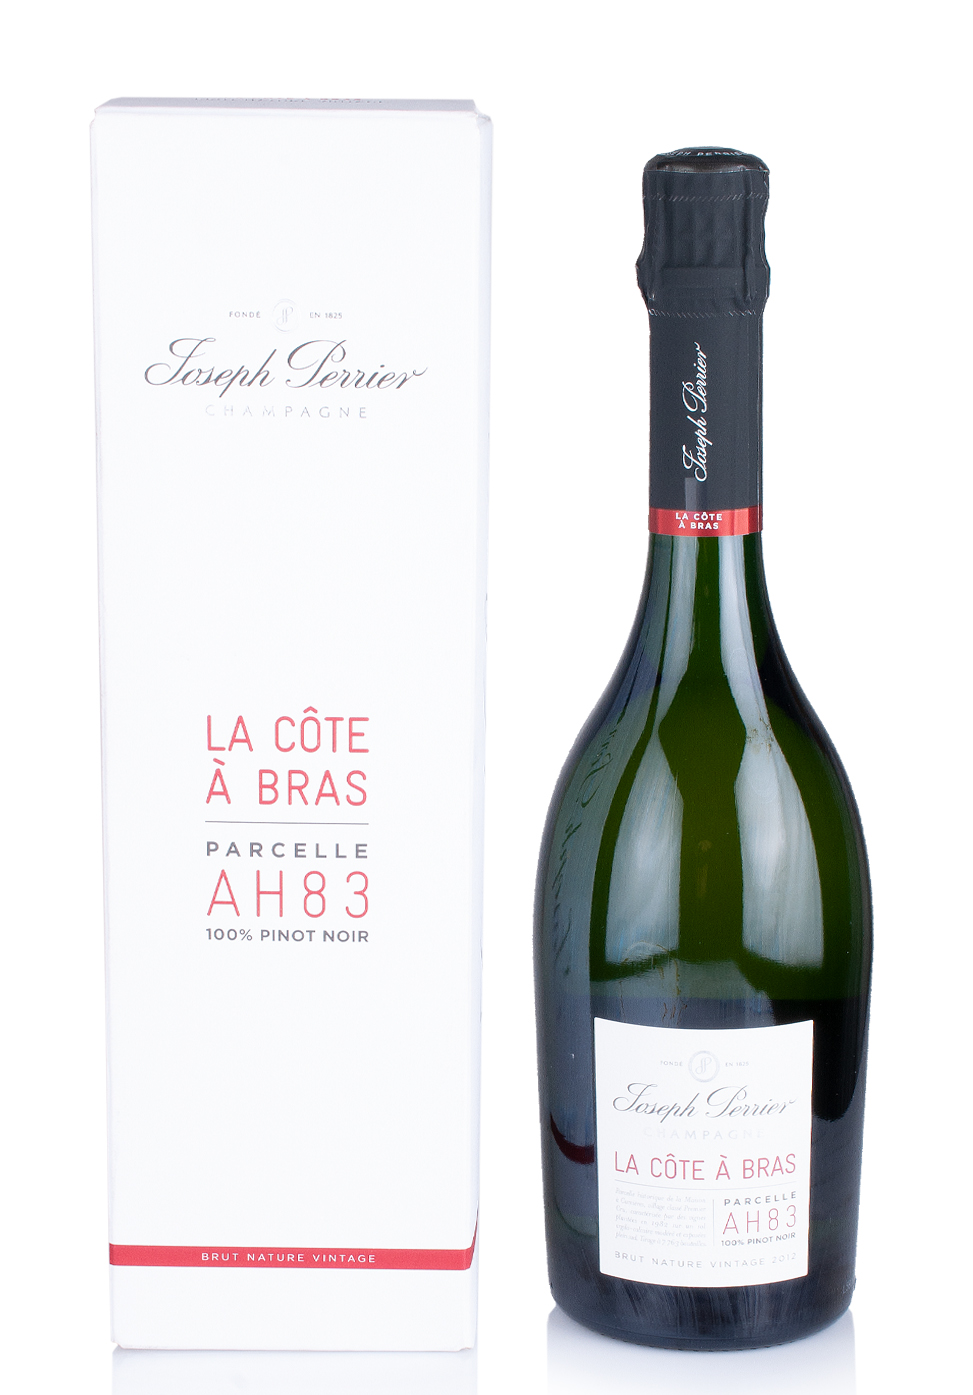 Champagne Joseph Perrier Cuvee Royale La Cote A Bras 2014 (0.75L) Image